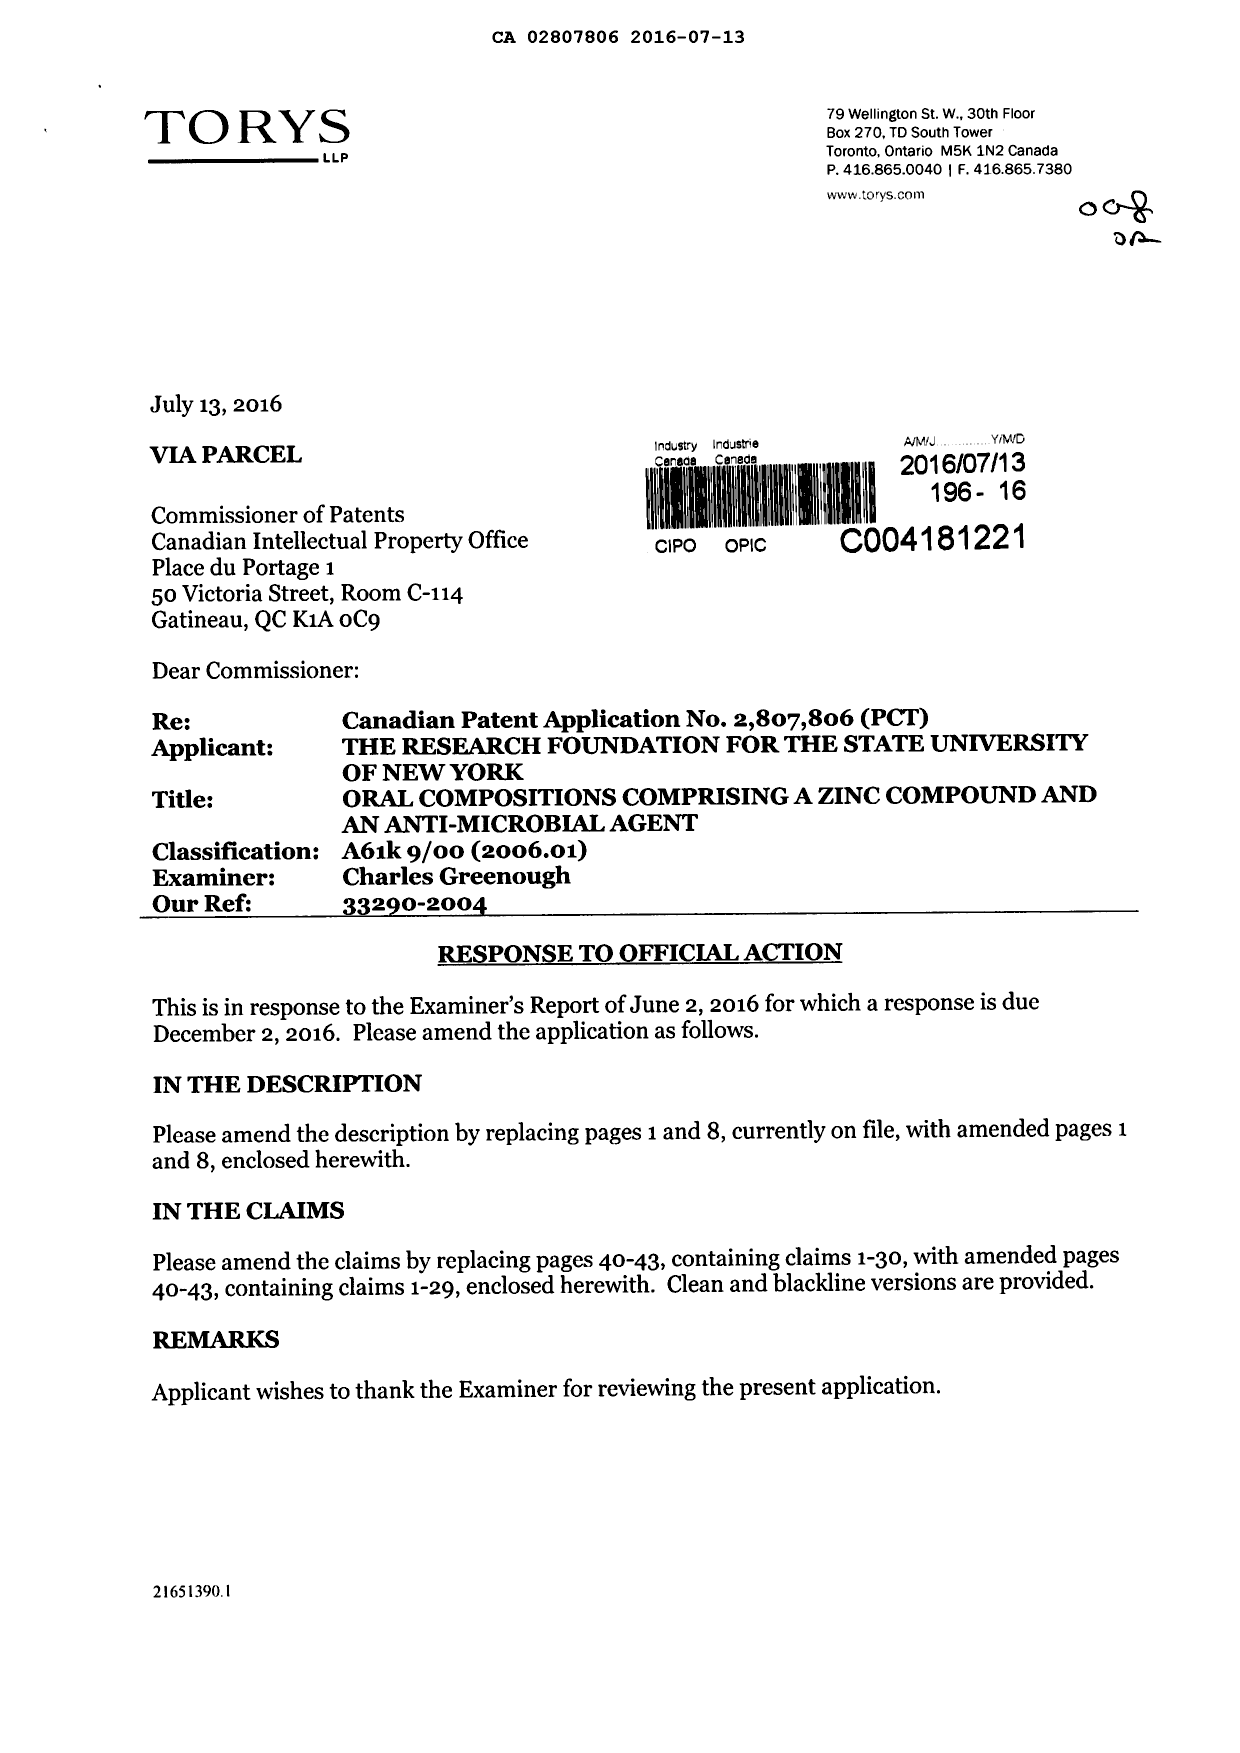 Document de brevet canadien 2807806. Modification 20160713. Image 1 de 13